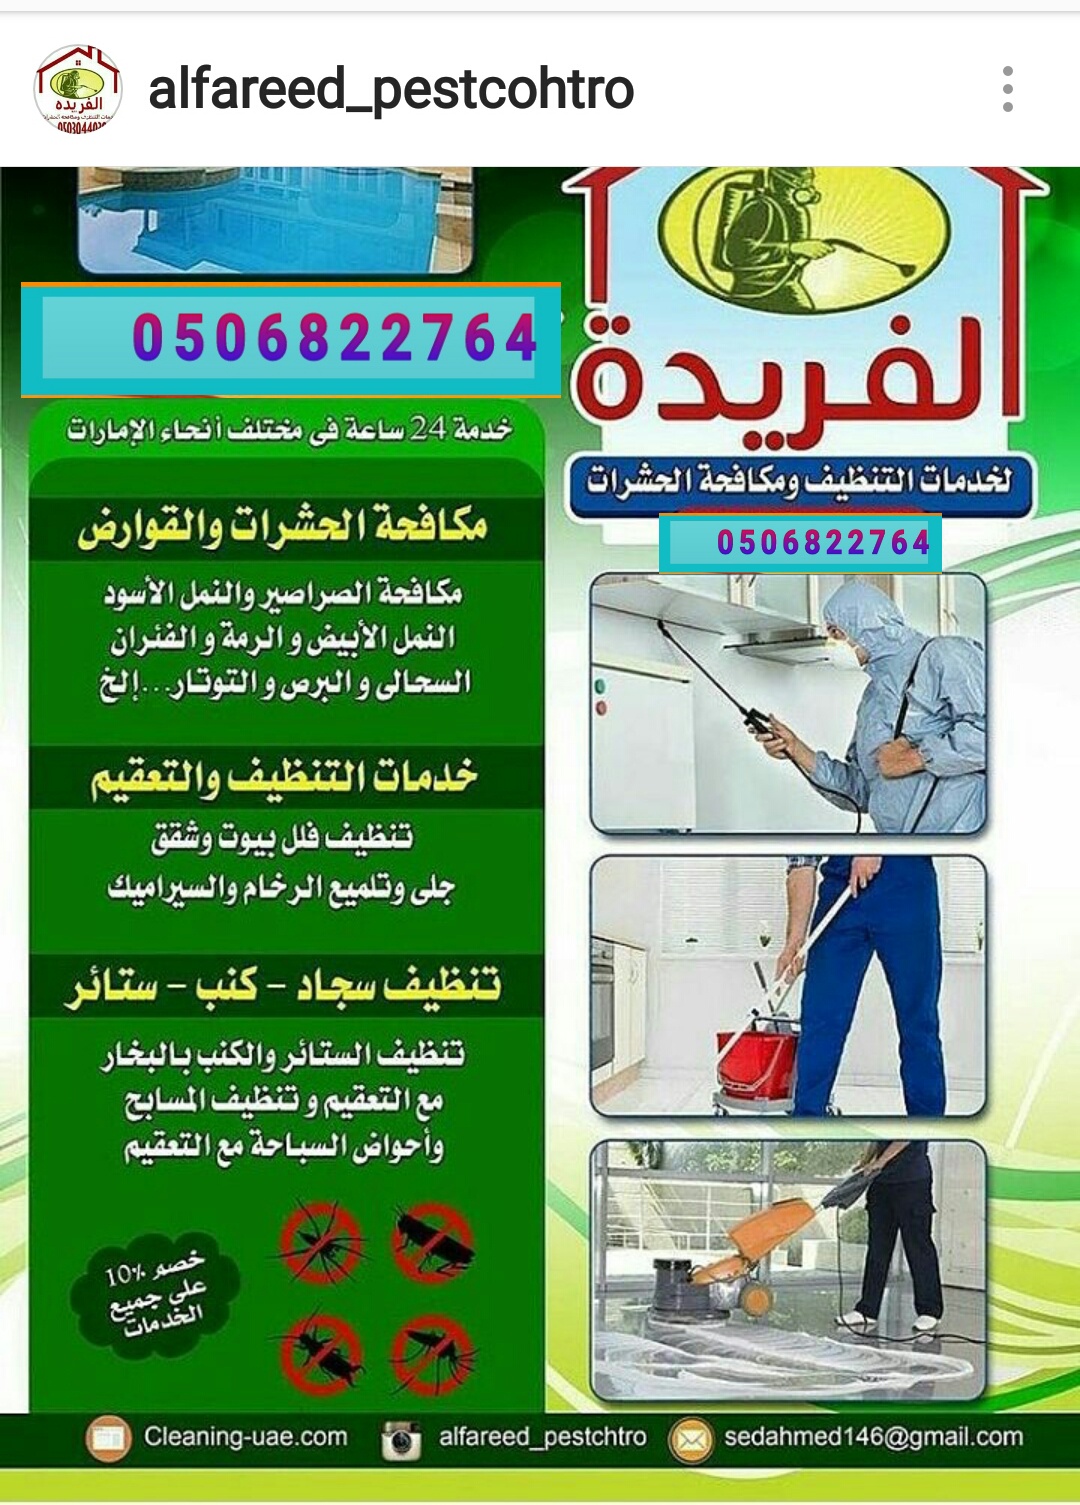 شركة تنظيف في راس الخيمه 00971506822764 شركة الفريدة ،شركة مكافحه حشرات في راس الخيمه P_783msw6w1